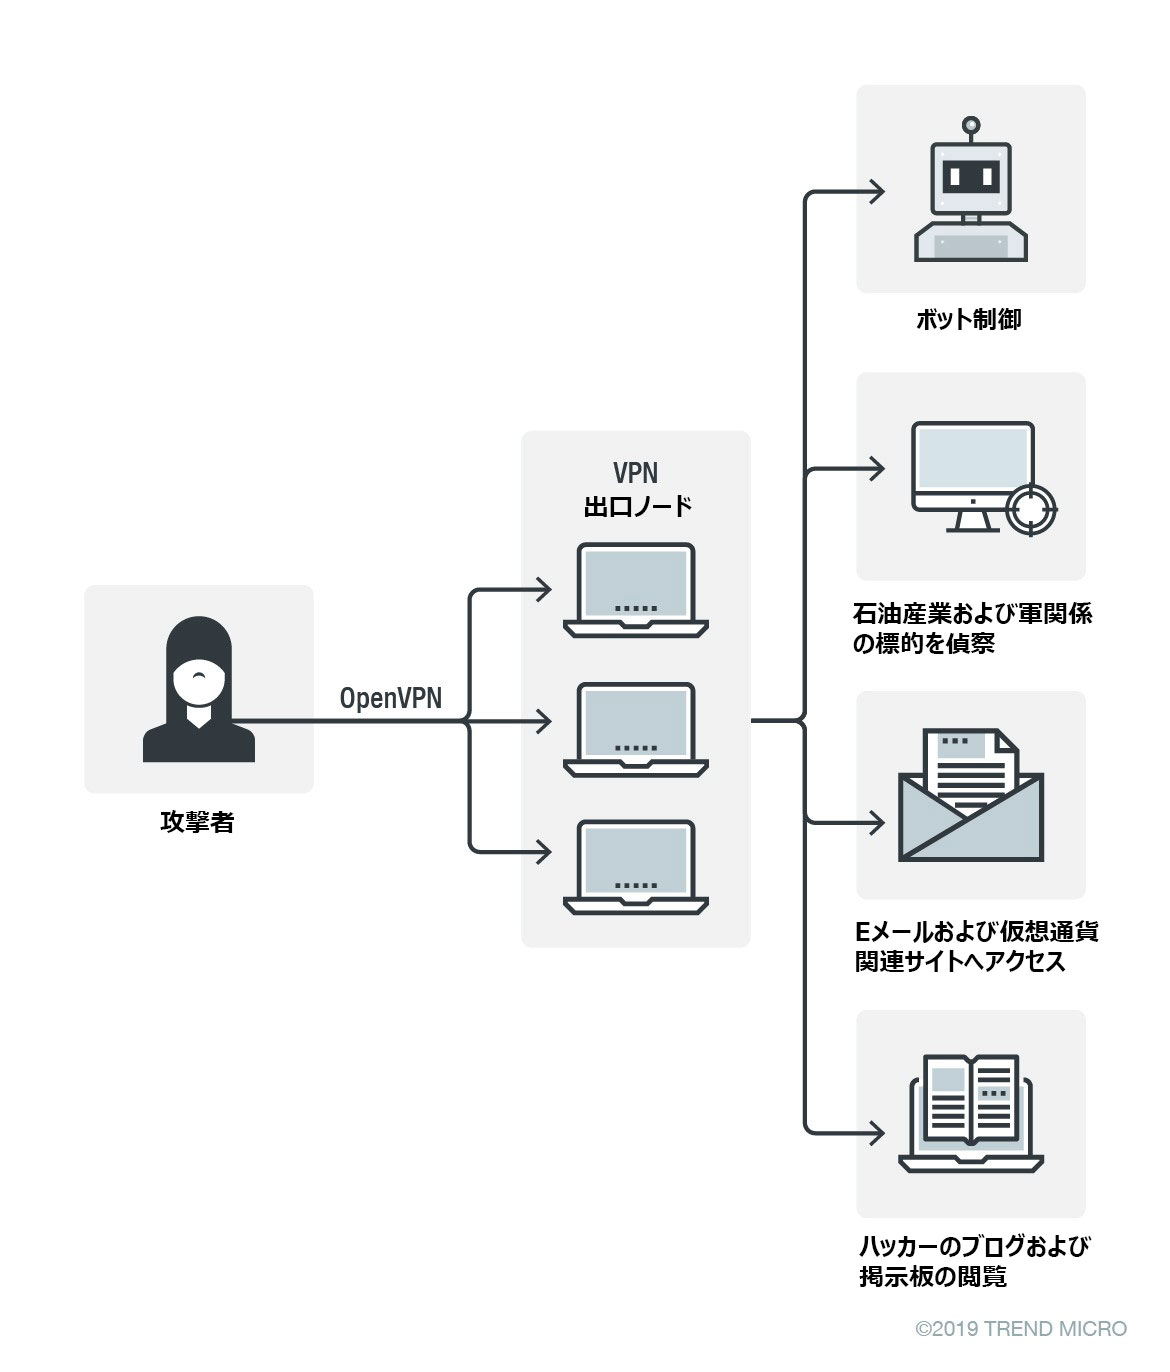 図2：私有VPNを使用したアクセスの概念図